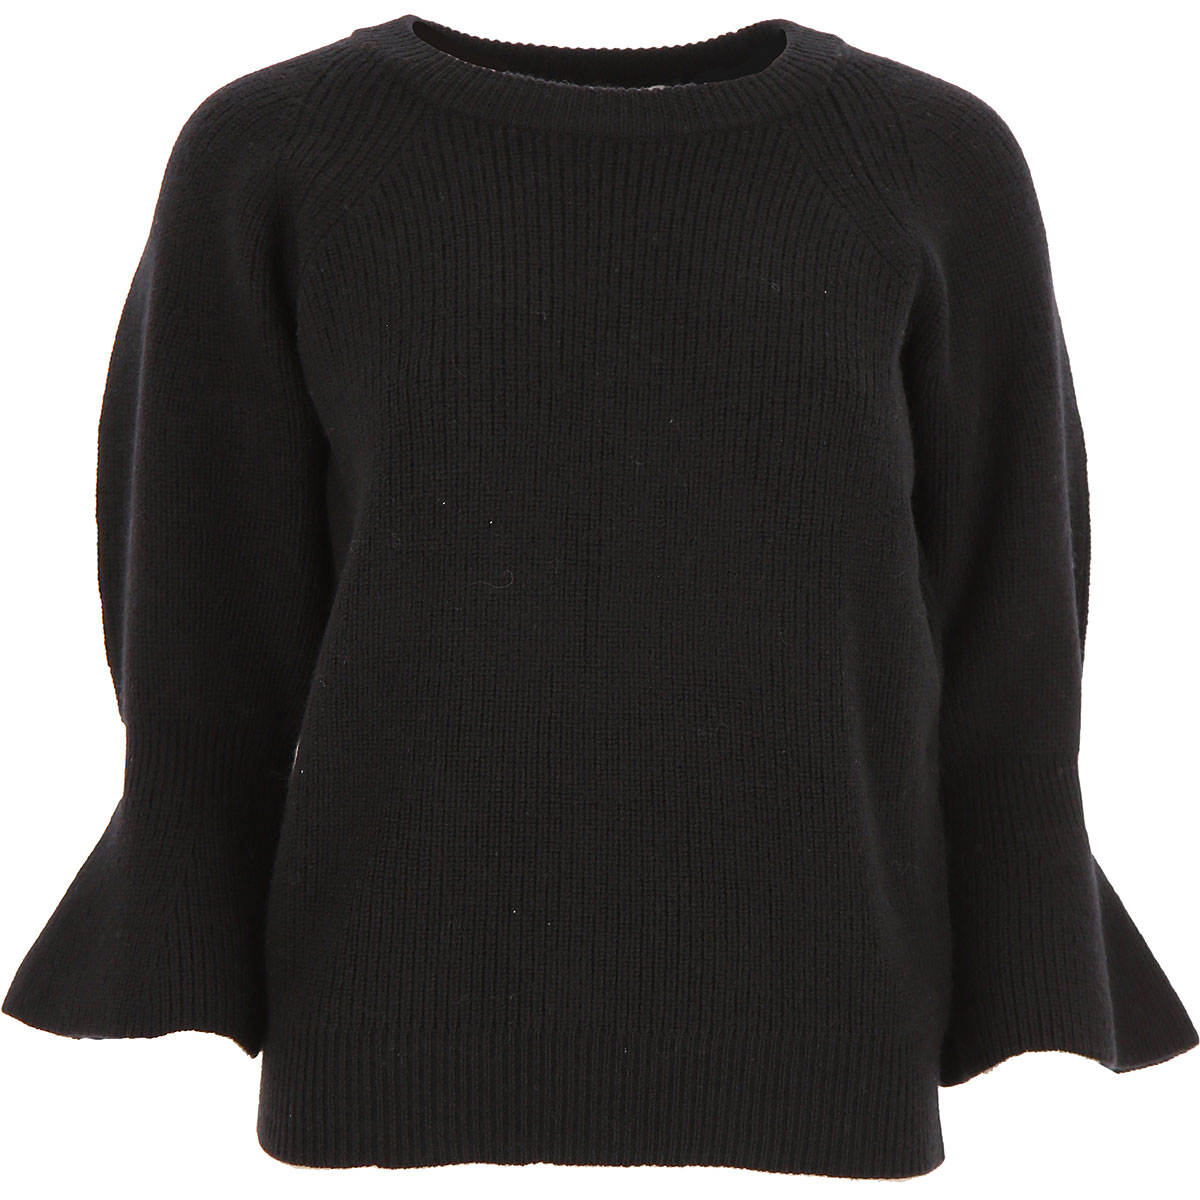 Michael Kors Sweater for Women Jumper 